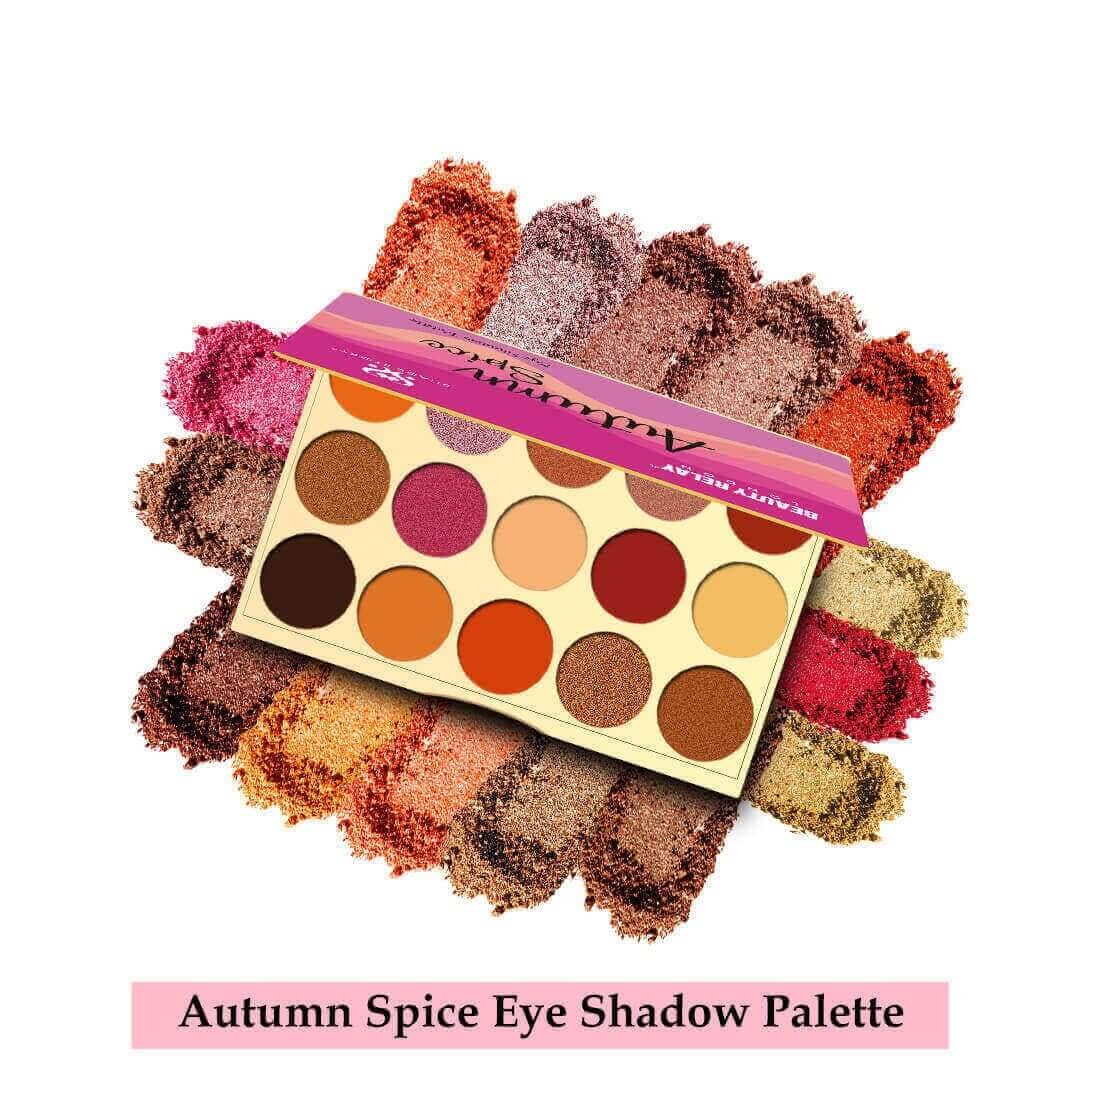 Autumn Spice Eye Shadow Palette